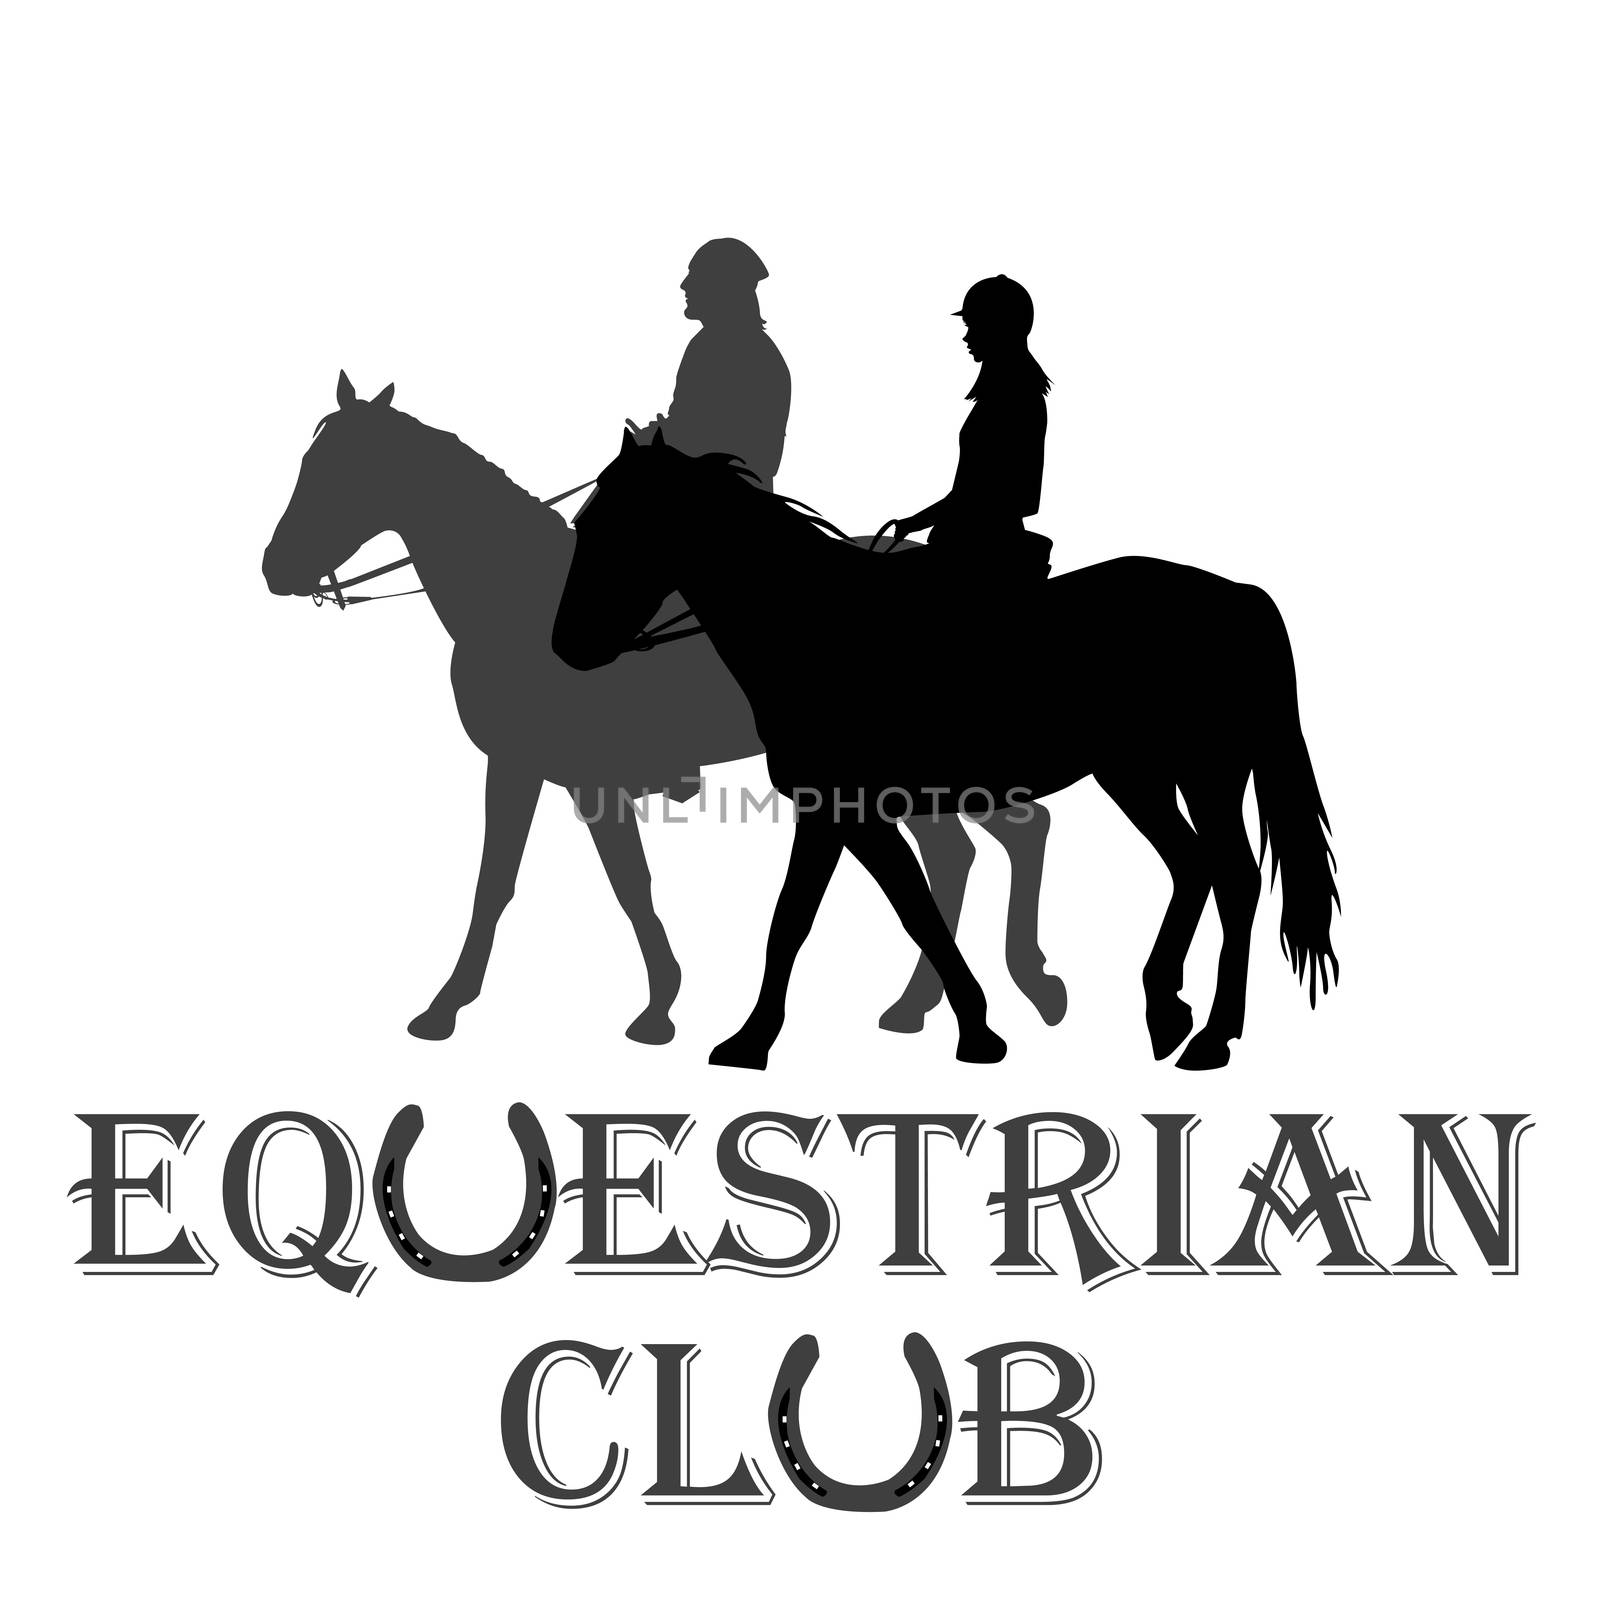 Equestrian club advertising by hibrida13